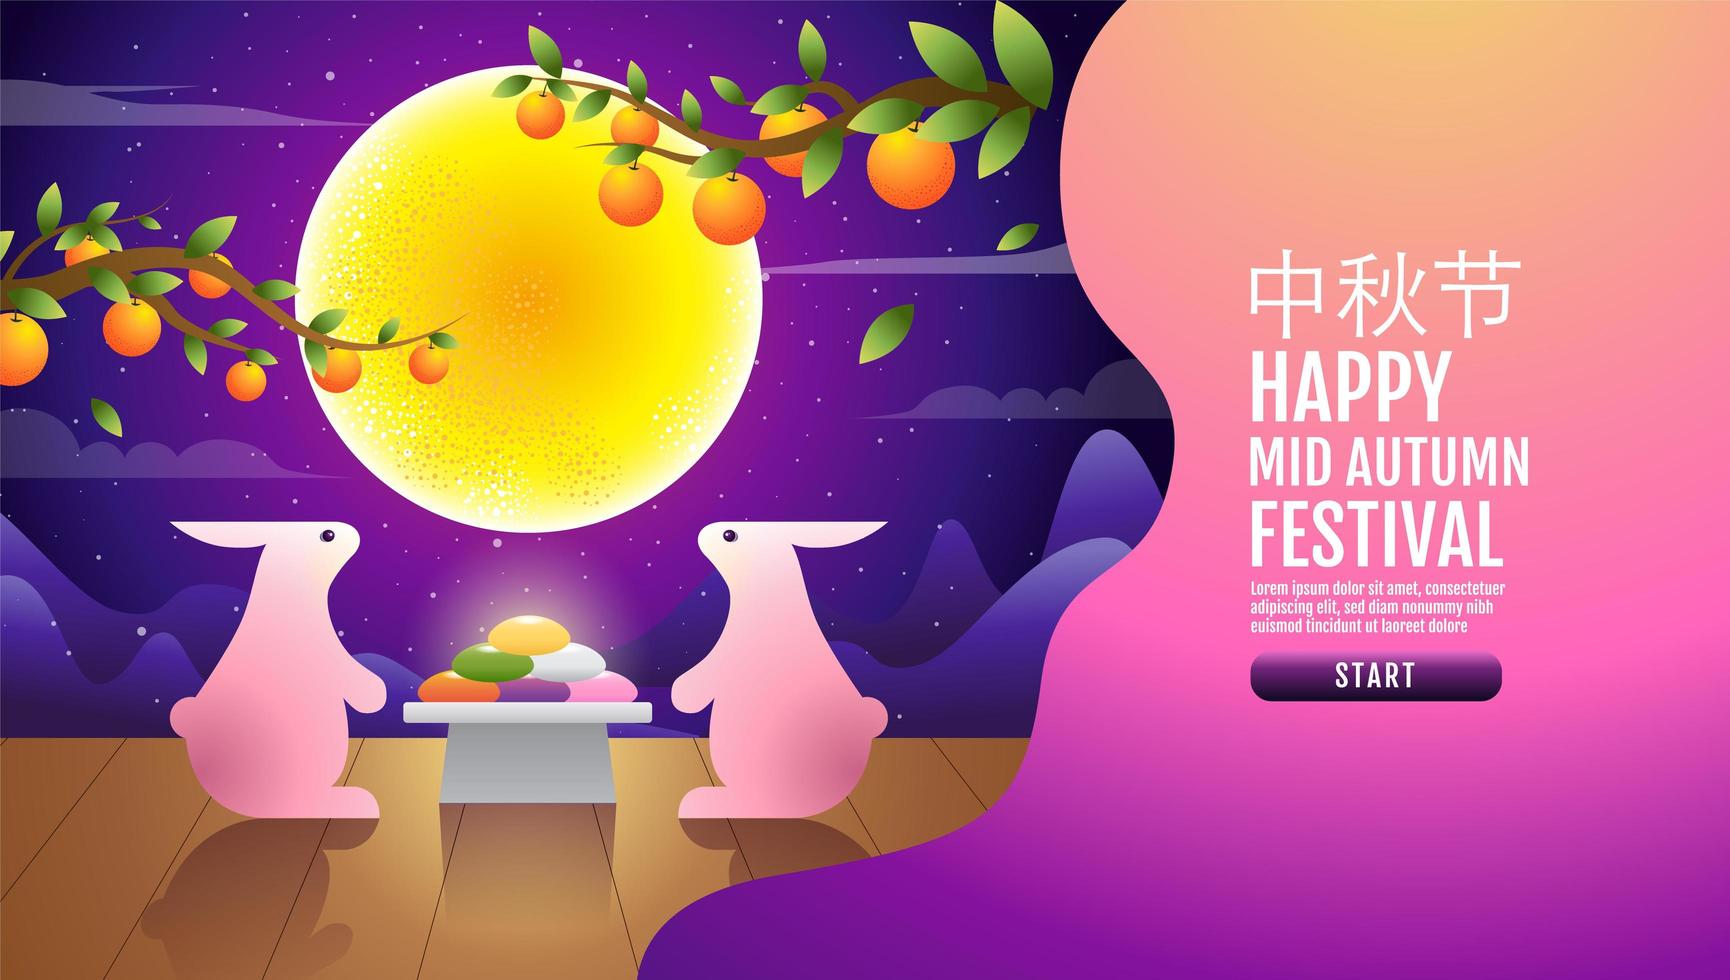 Happy Mid Autumn Festival Kaninchen und Mond Landing Page vektor